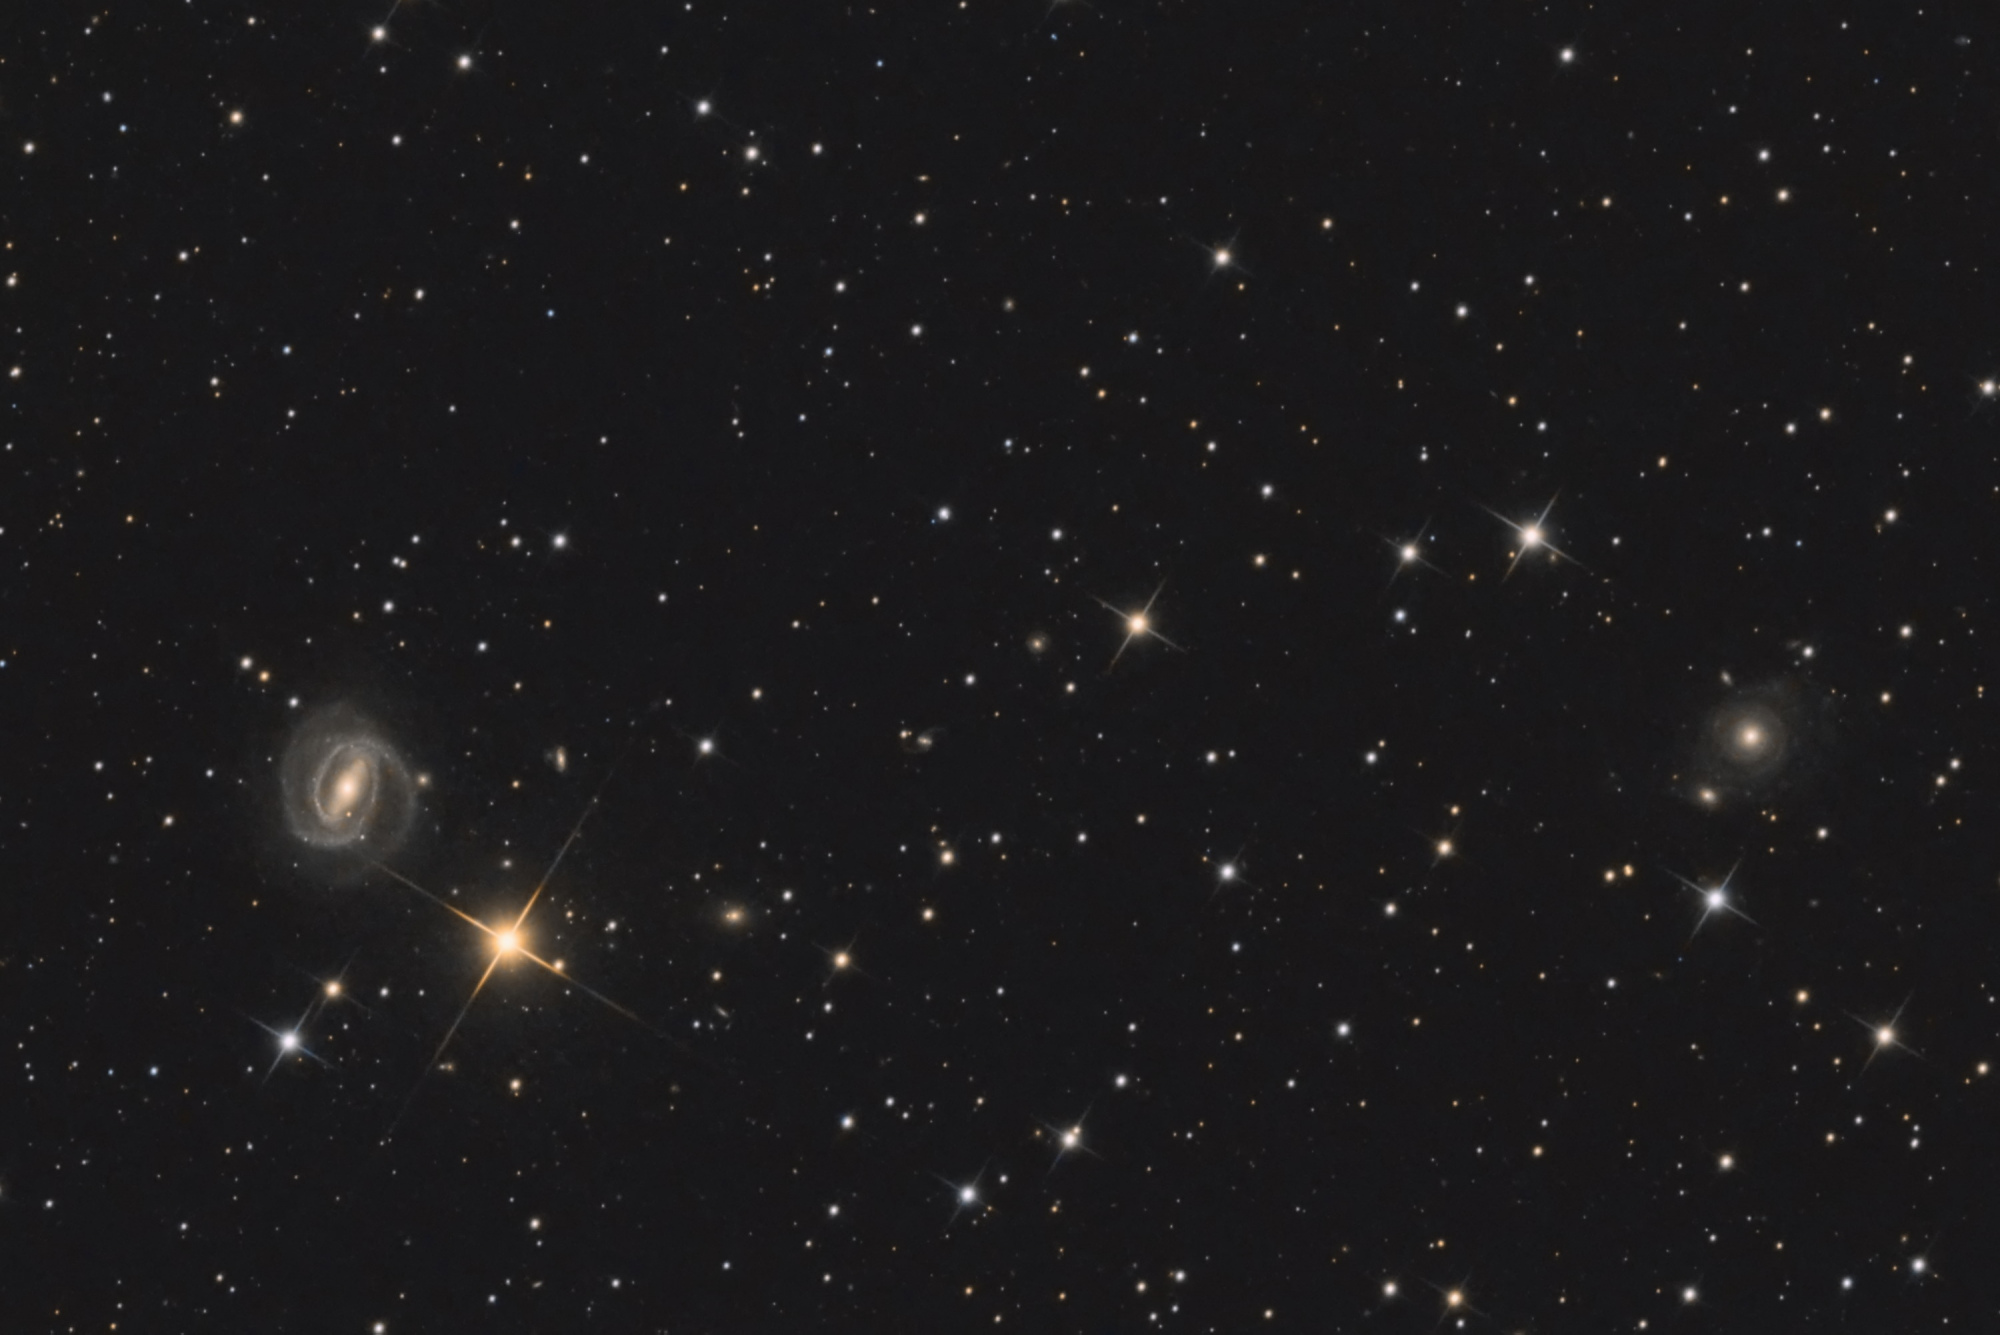 galaxies_crop.thumb.jpg.c9ca4446acf5a69a4ddc7223f985d1e3.jpg